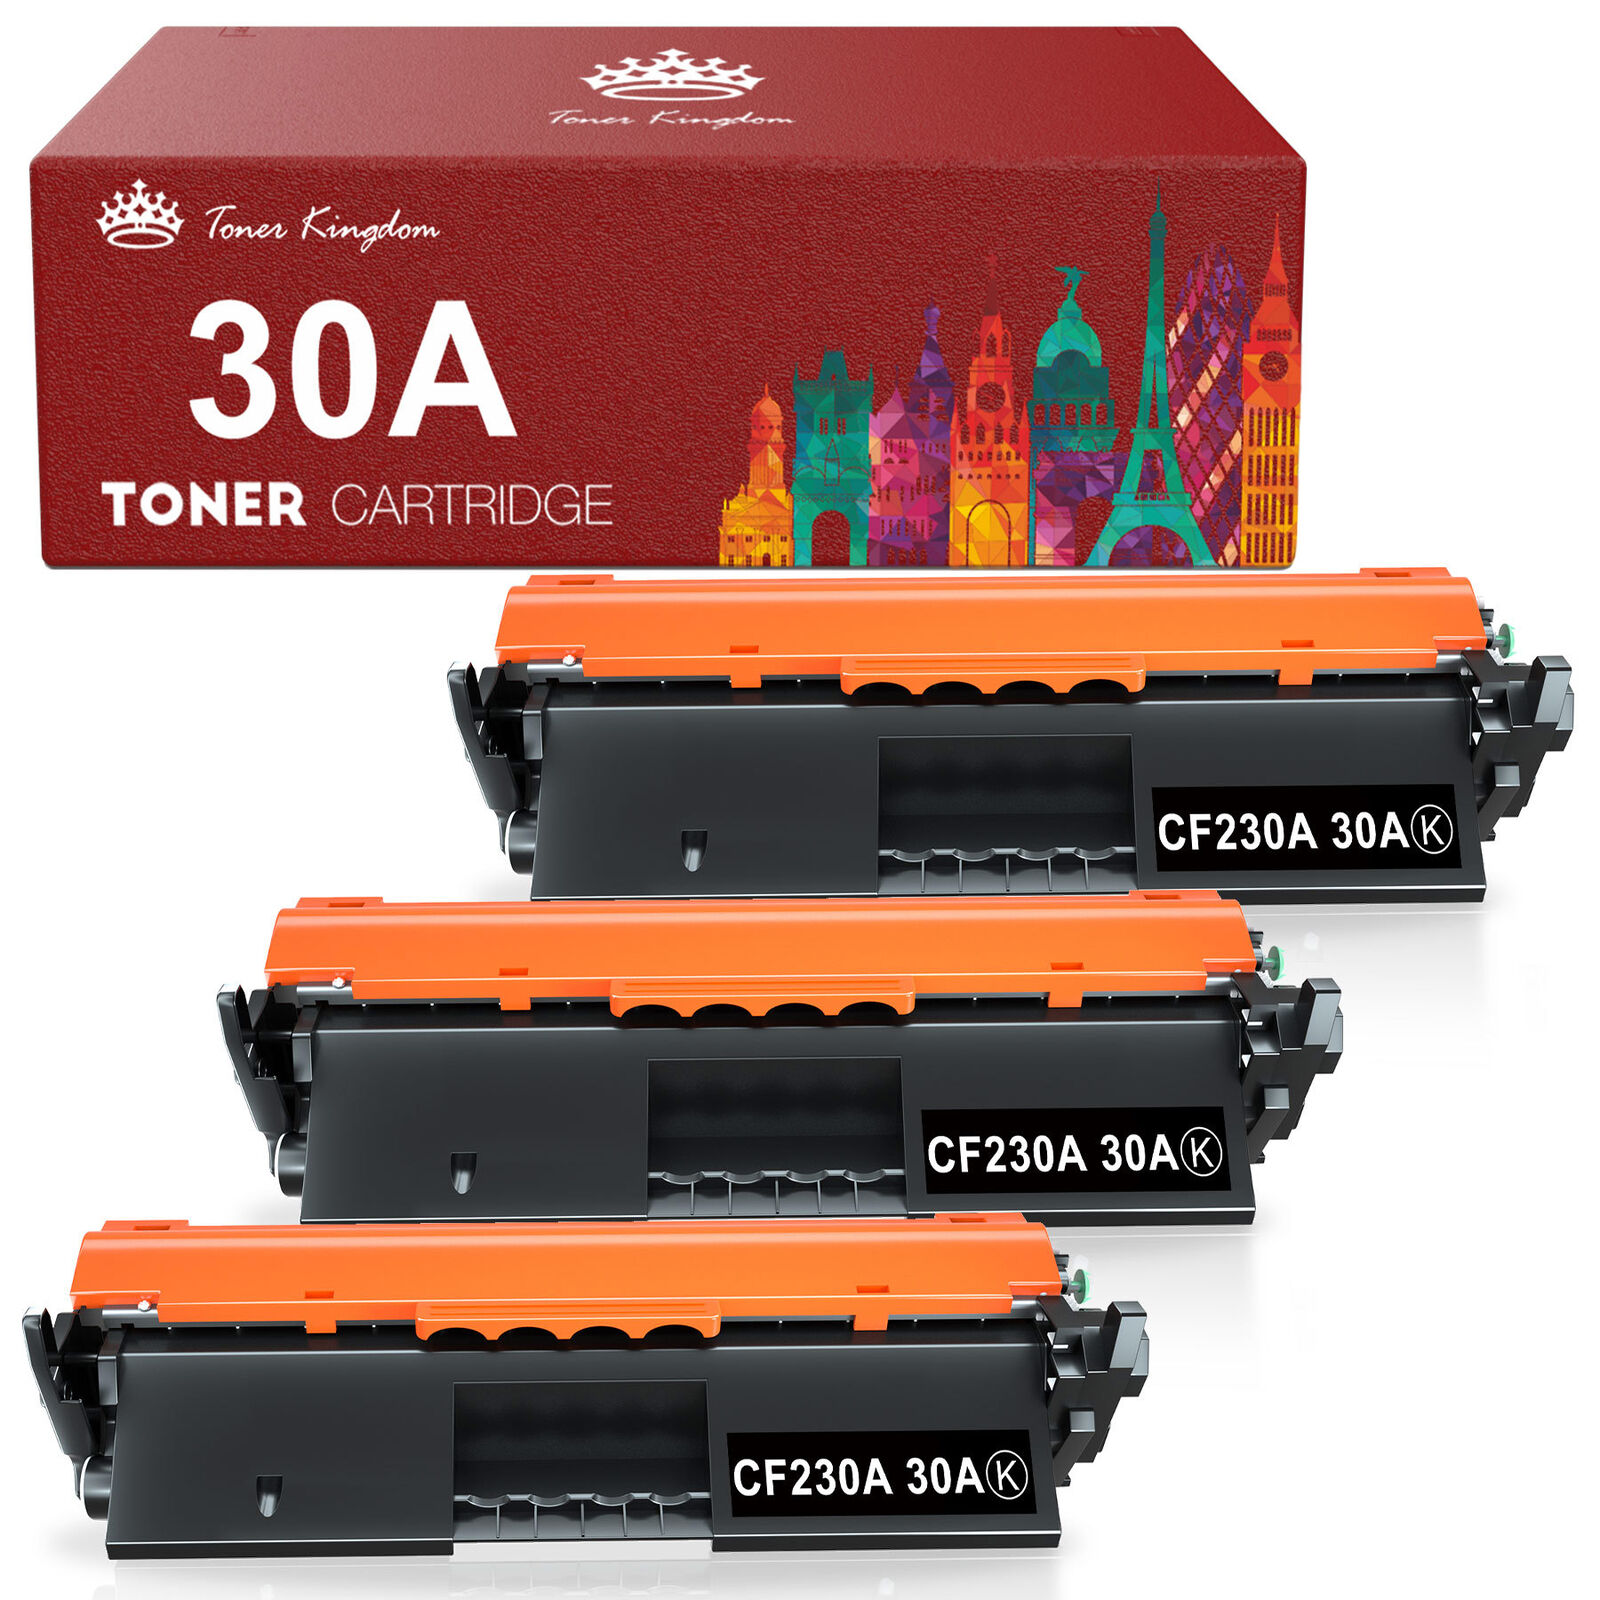 3P 30A CF230A Toner Cartridge Black for HP Laserjet Pro M203dw M227fdw M227fdn